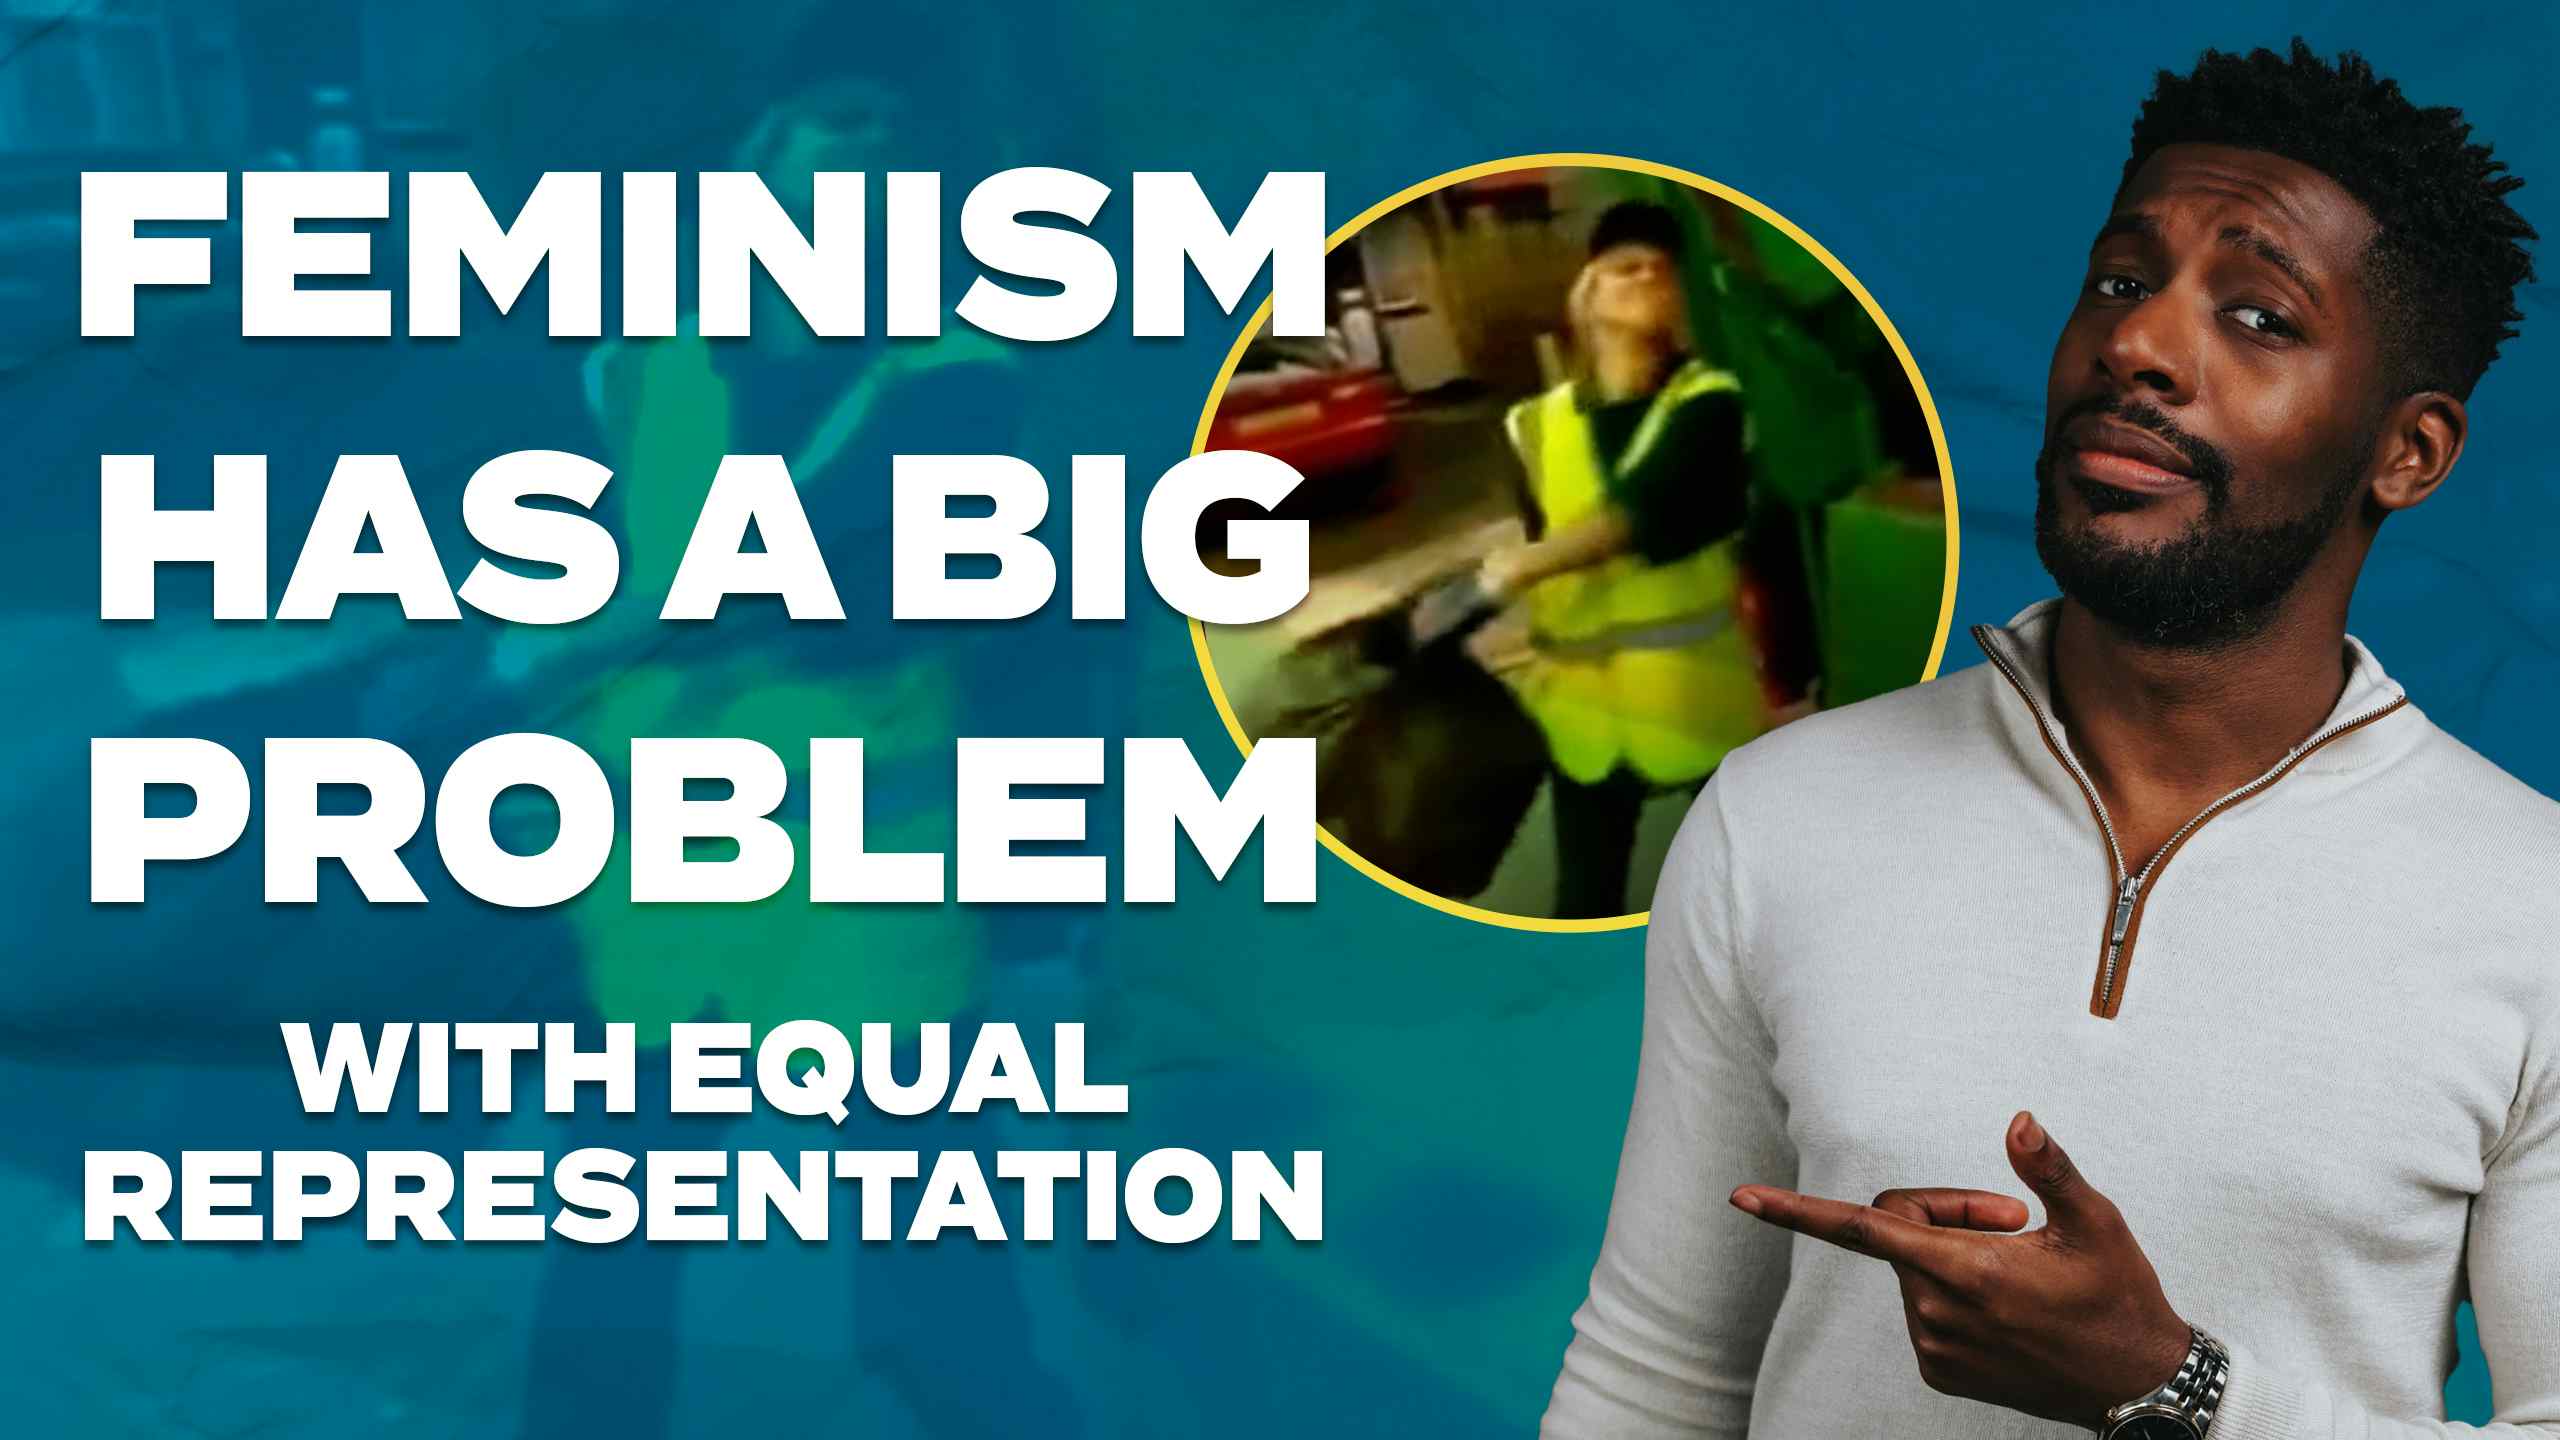 Feminism Has a Big Problem with Equal Representation